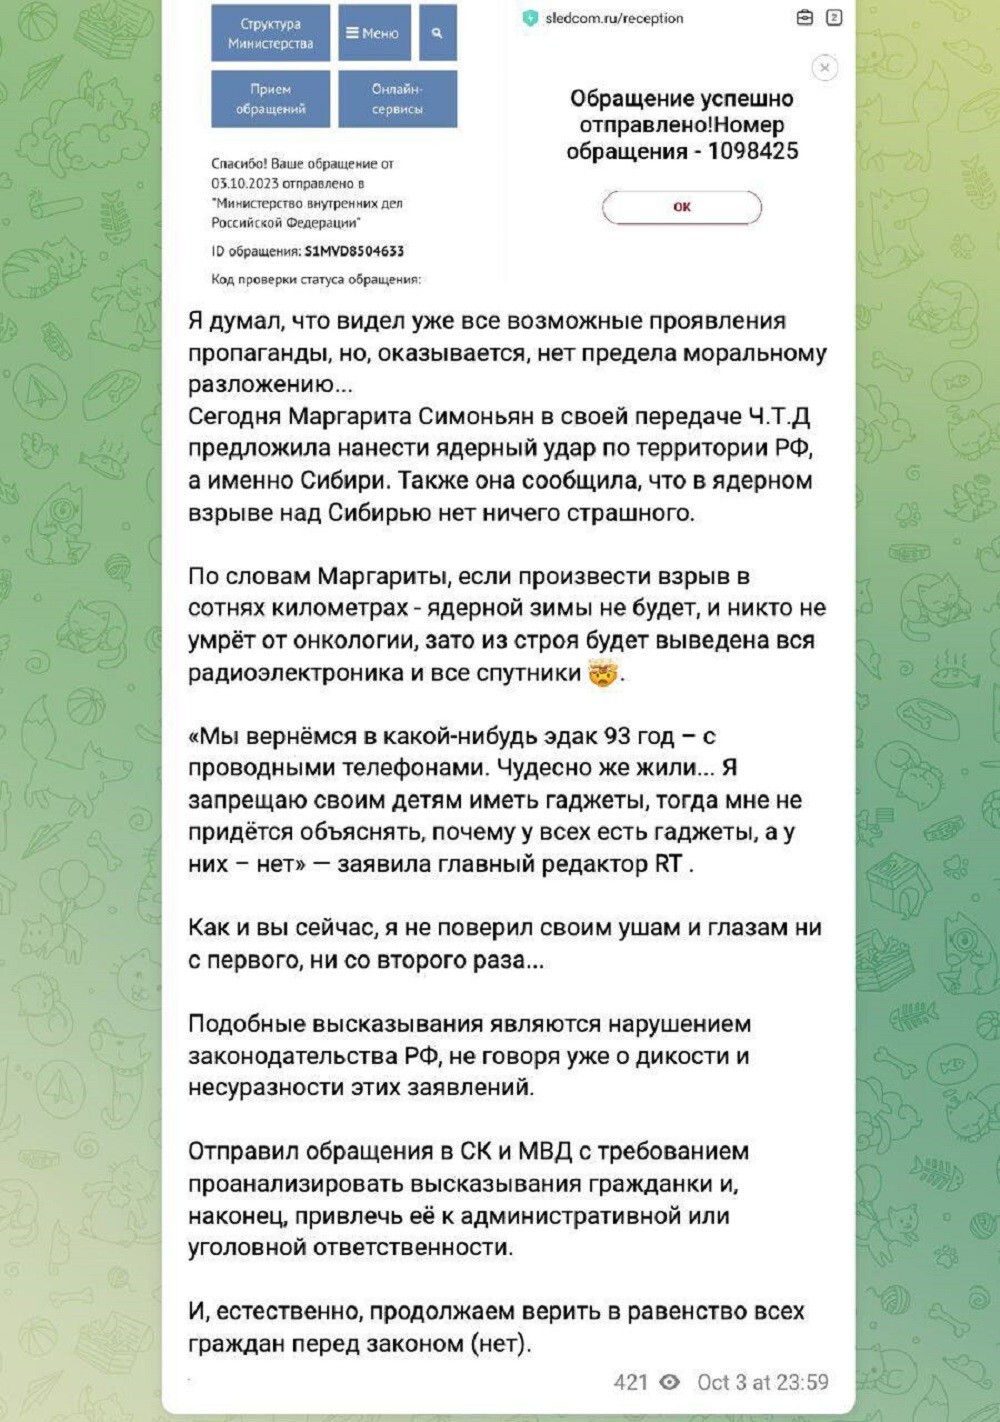 "Я даже обрадуюсь!": Маргарита Симоньян предложила над Сибирью взорвать ядерную бомбу, чтобы её дети не сидели в телефонах